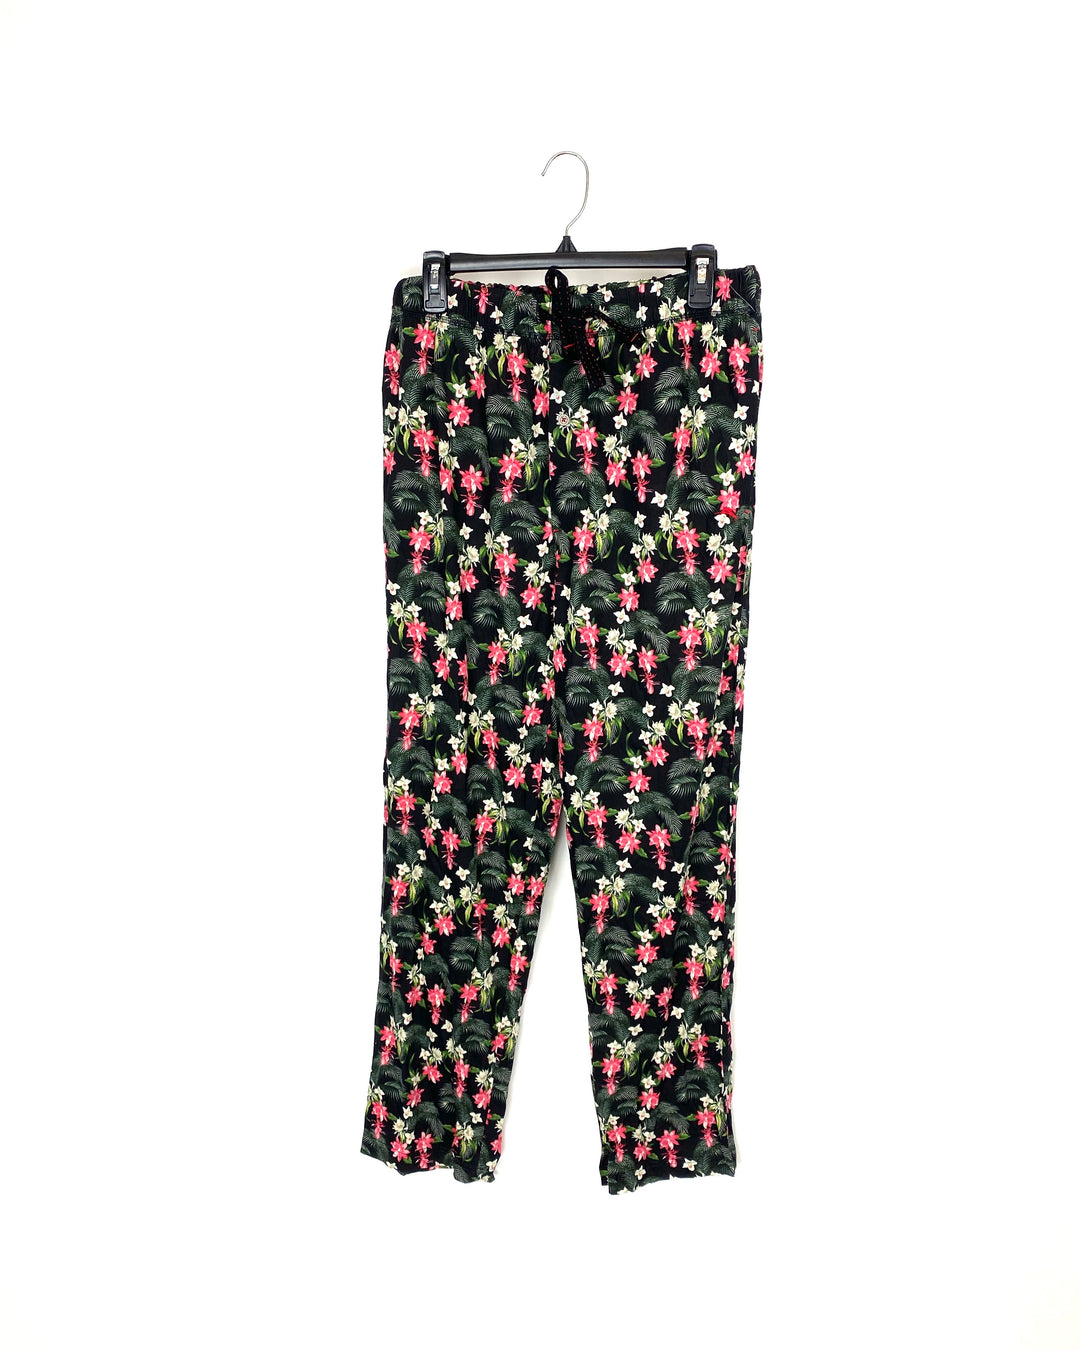 MENS  Black Floral Pajama Pants - Medium